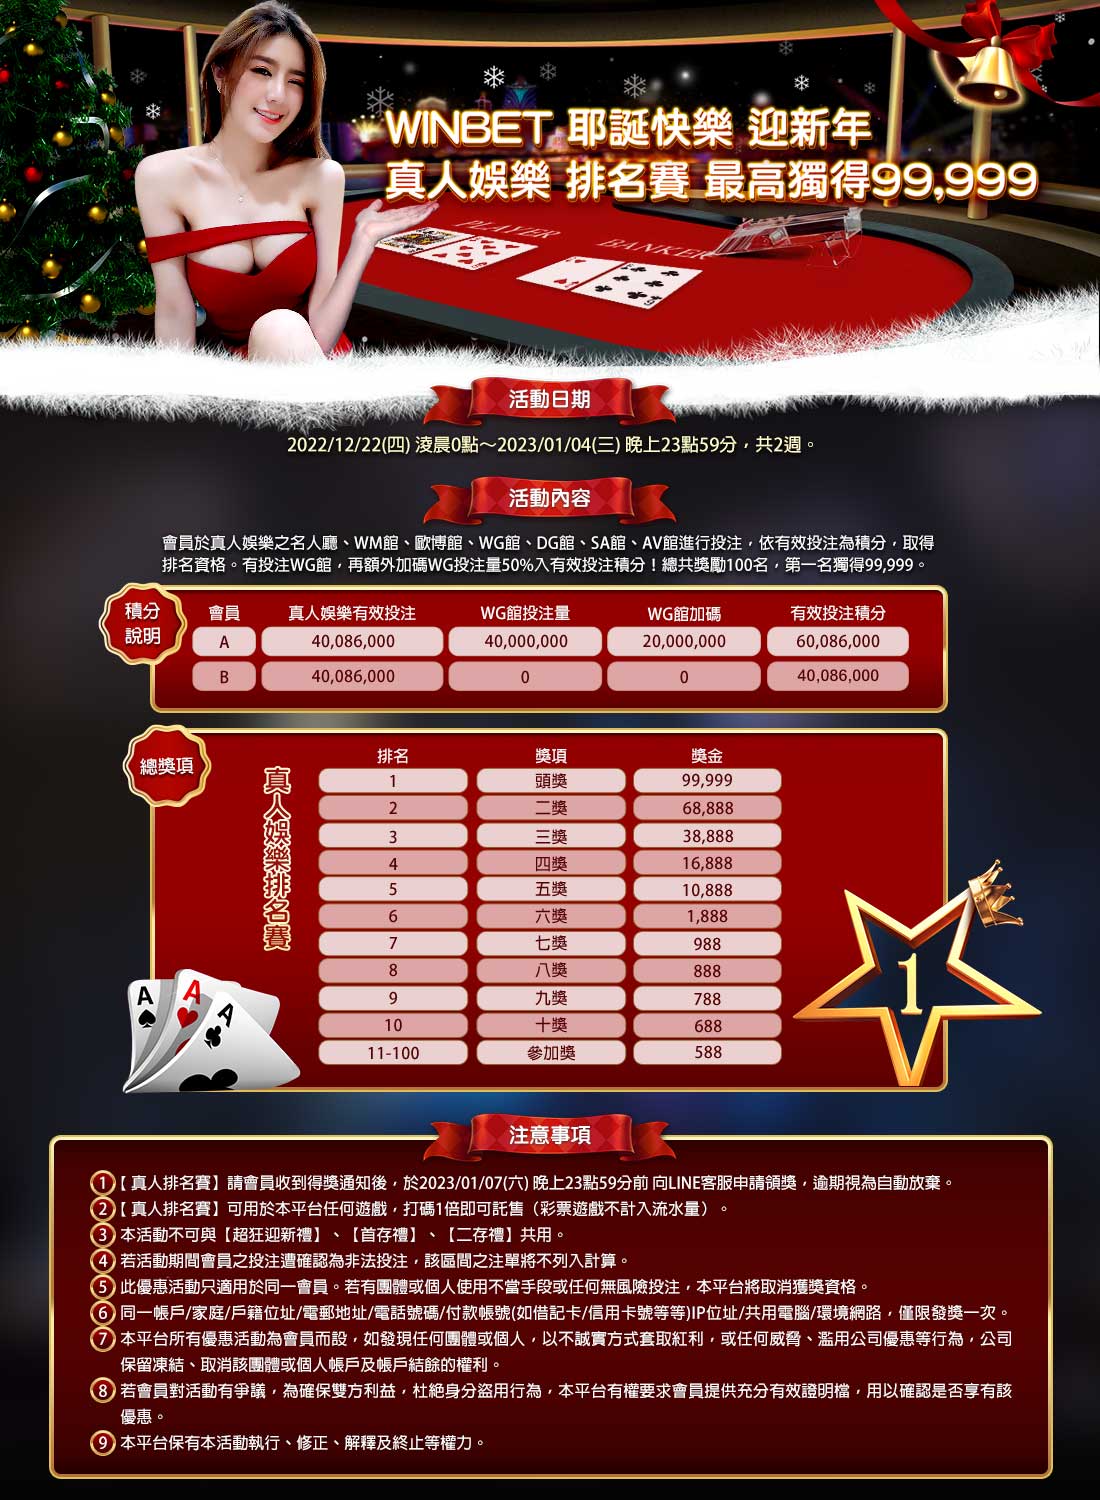 贏家娛樂城-WINBET 耶誕快樂 迎新年 真人娛樂 排名賽最高獨得99999